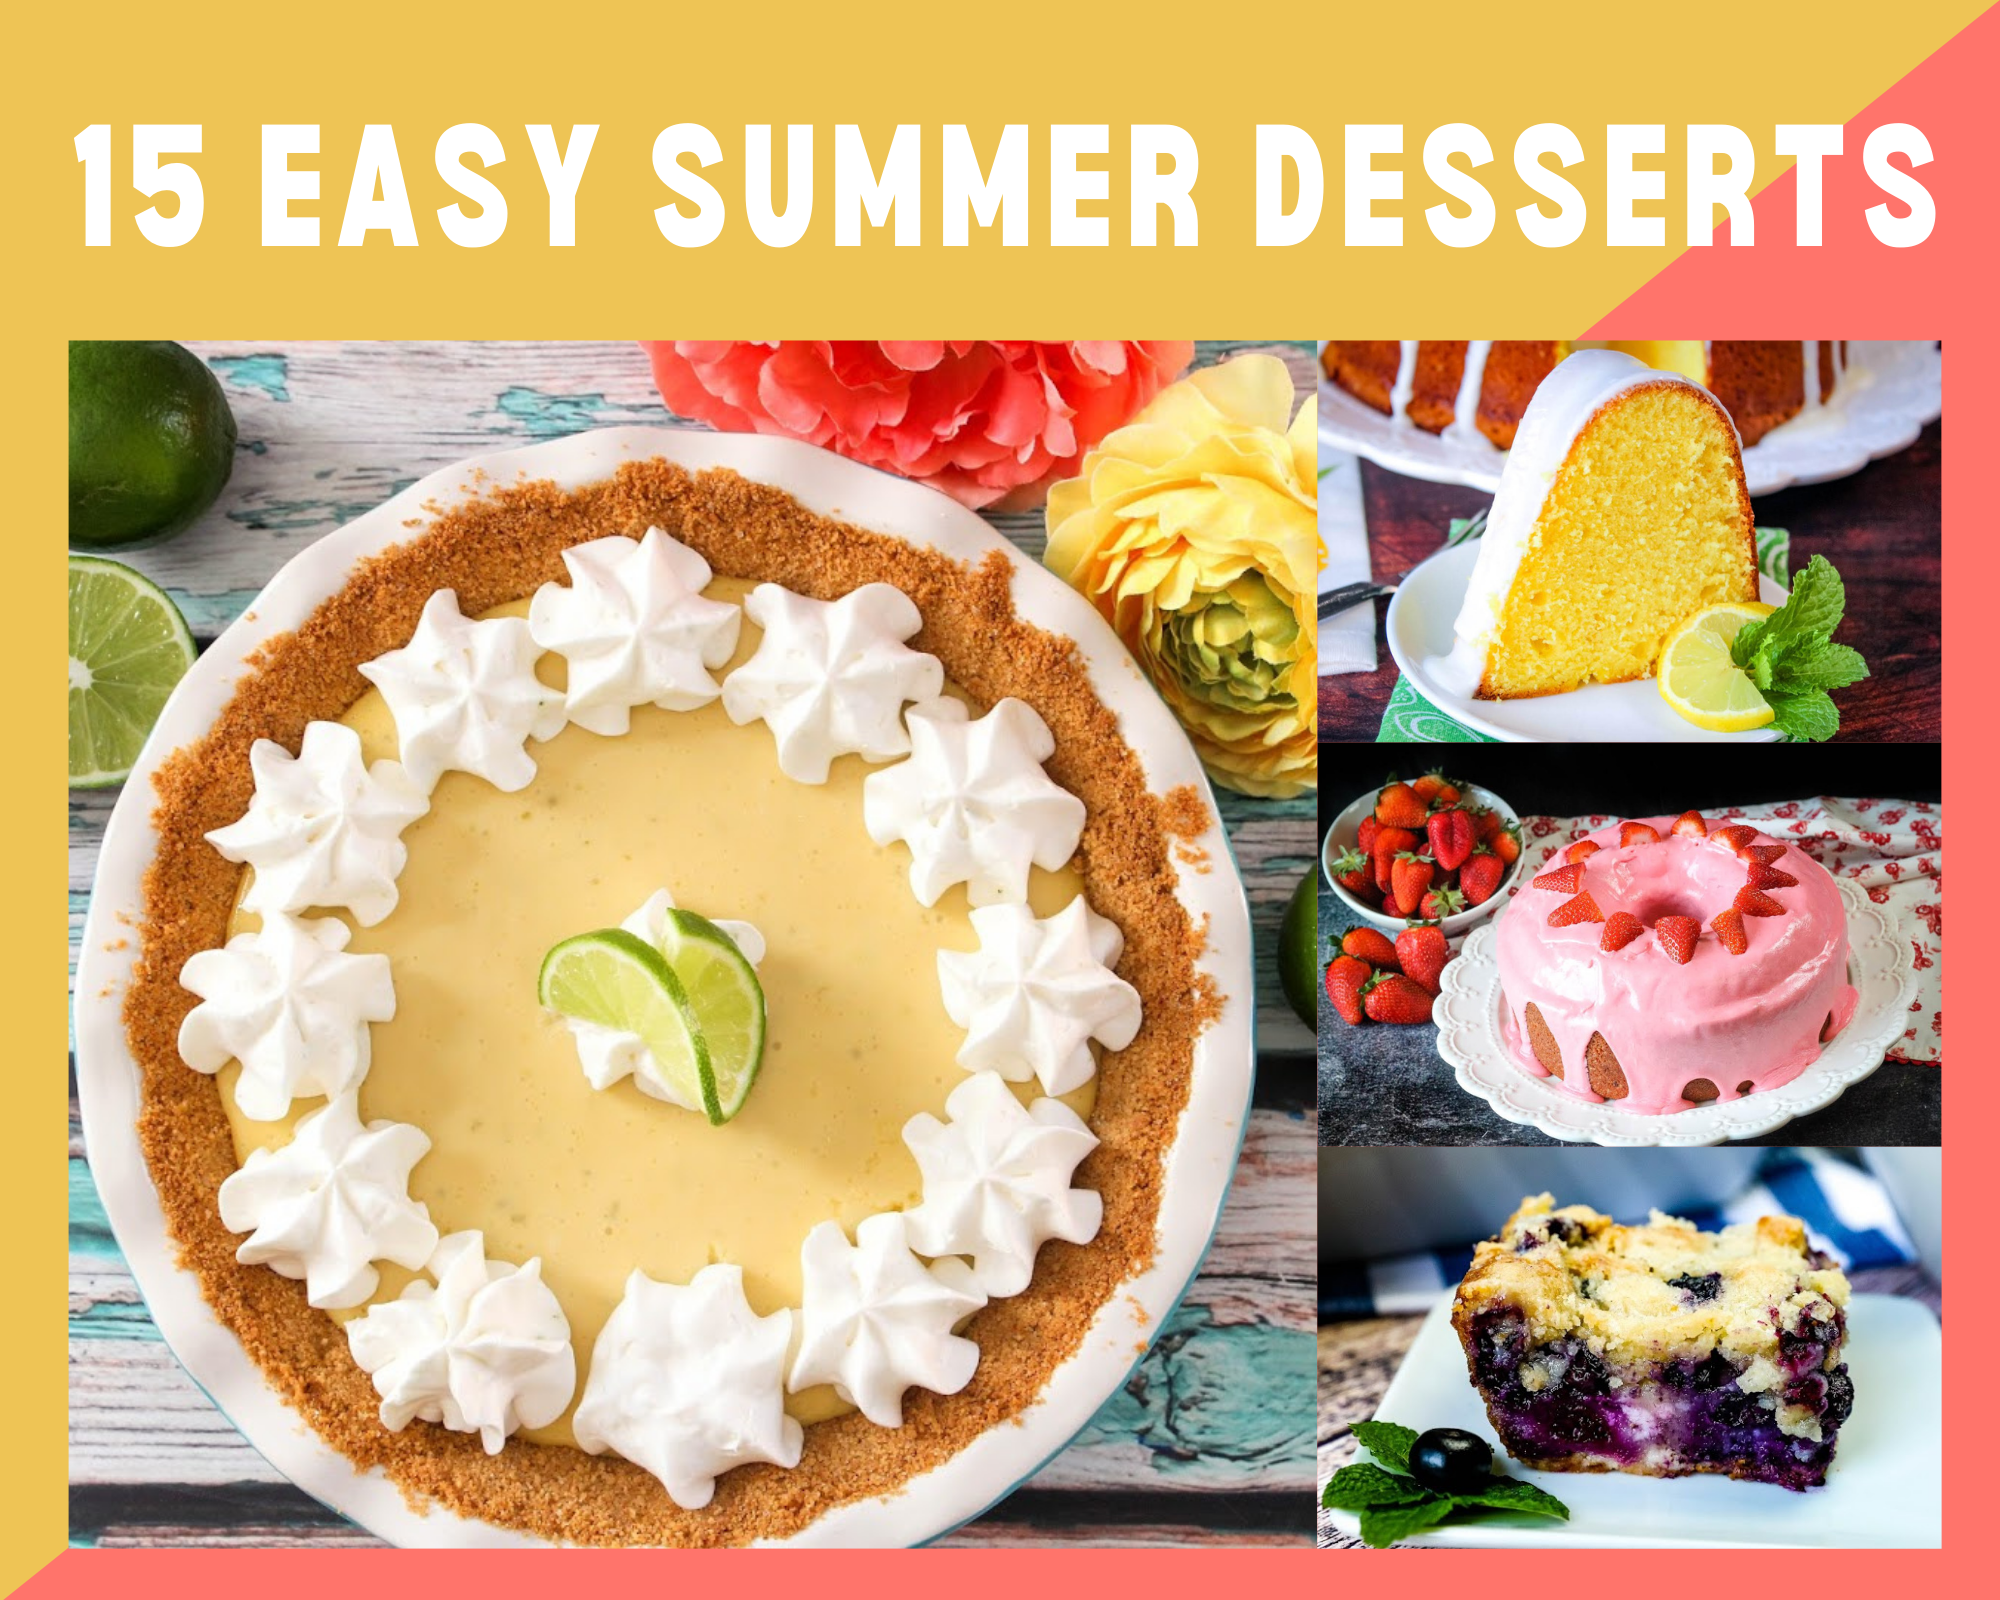 Easy summer desserts